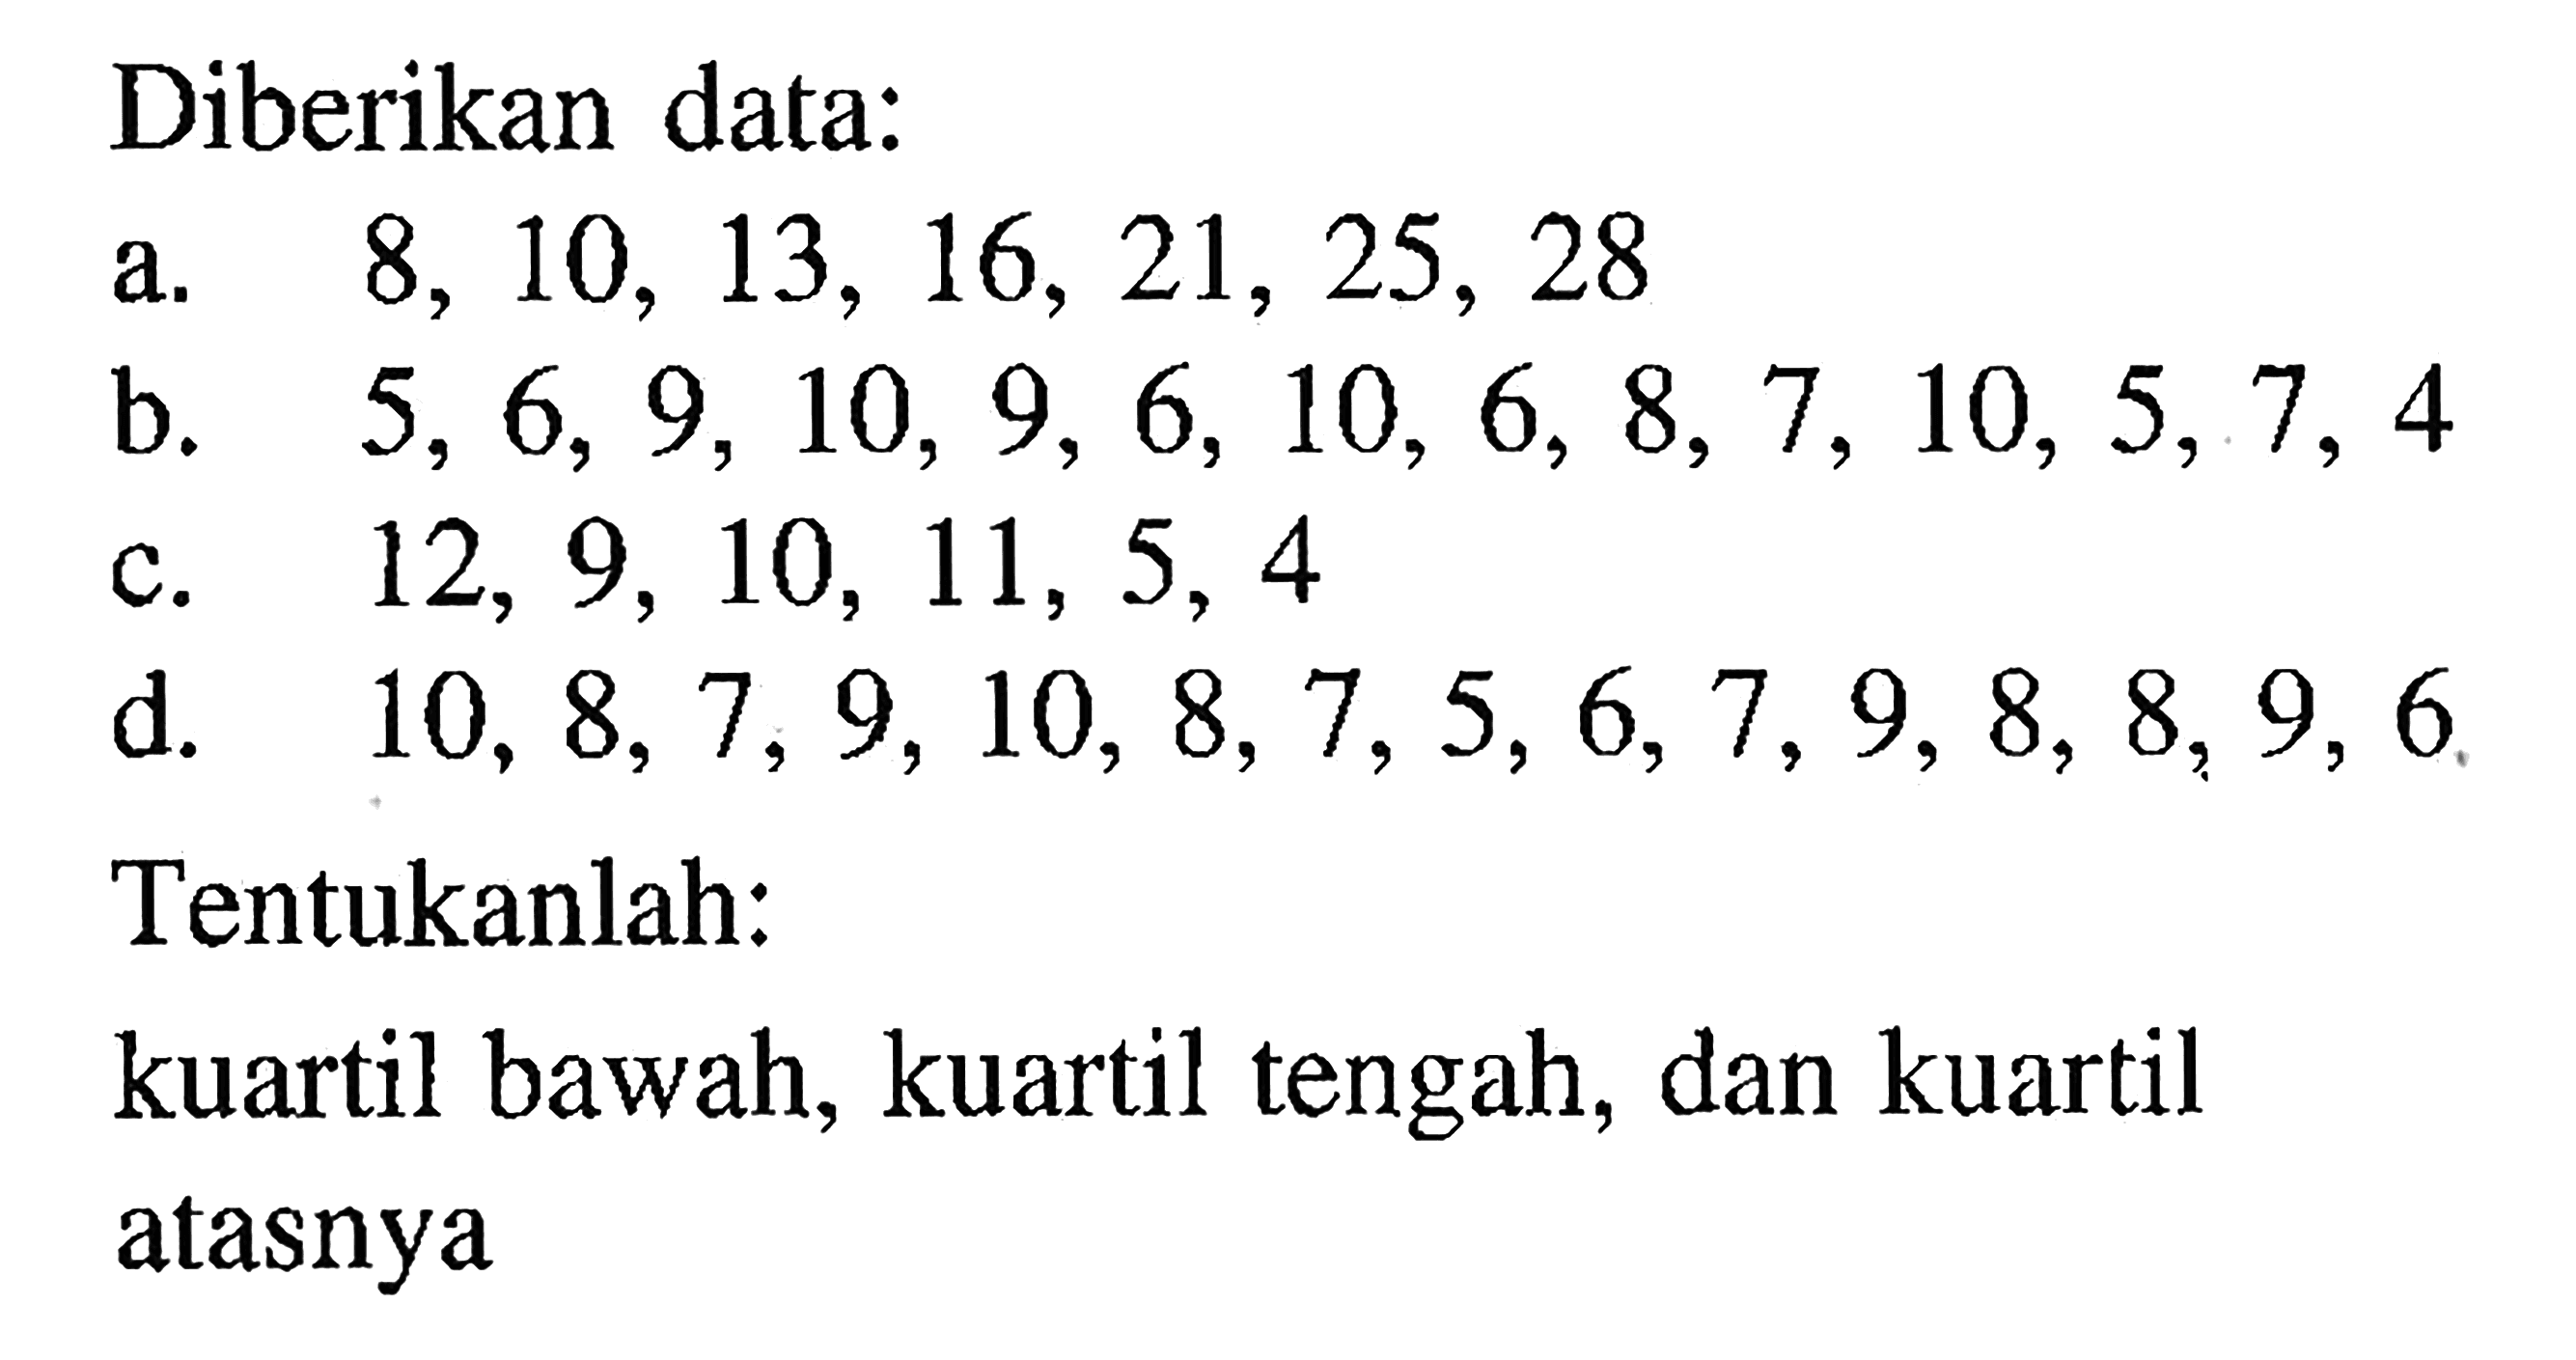 Diberikan data: a. 8,10,13,16,21,25,28 b. 5,6,9,10,9,6,10,6,8,7,10,5,7,4 c. 12,9,10,11,5,4 d. 10,8,7,9,10,8,7,5,6,7,9,8,8,9,6 Tentukanlah: kuartil bawah, kuartil tengah, dan kuartil atasnya